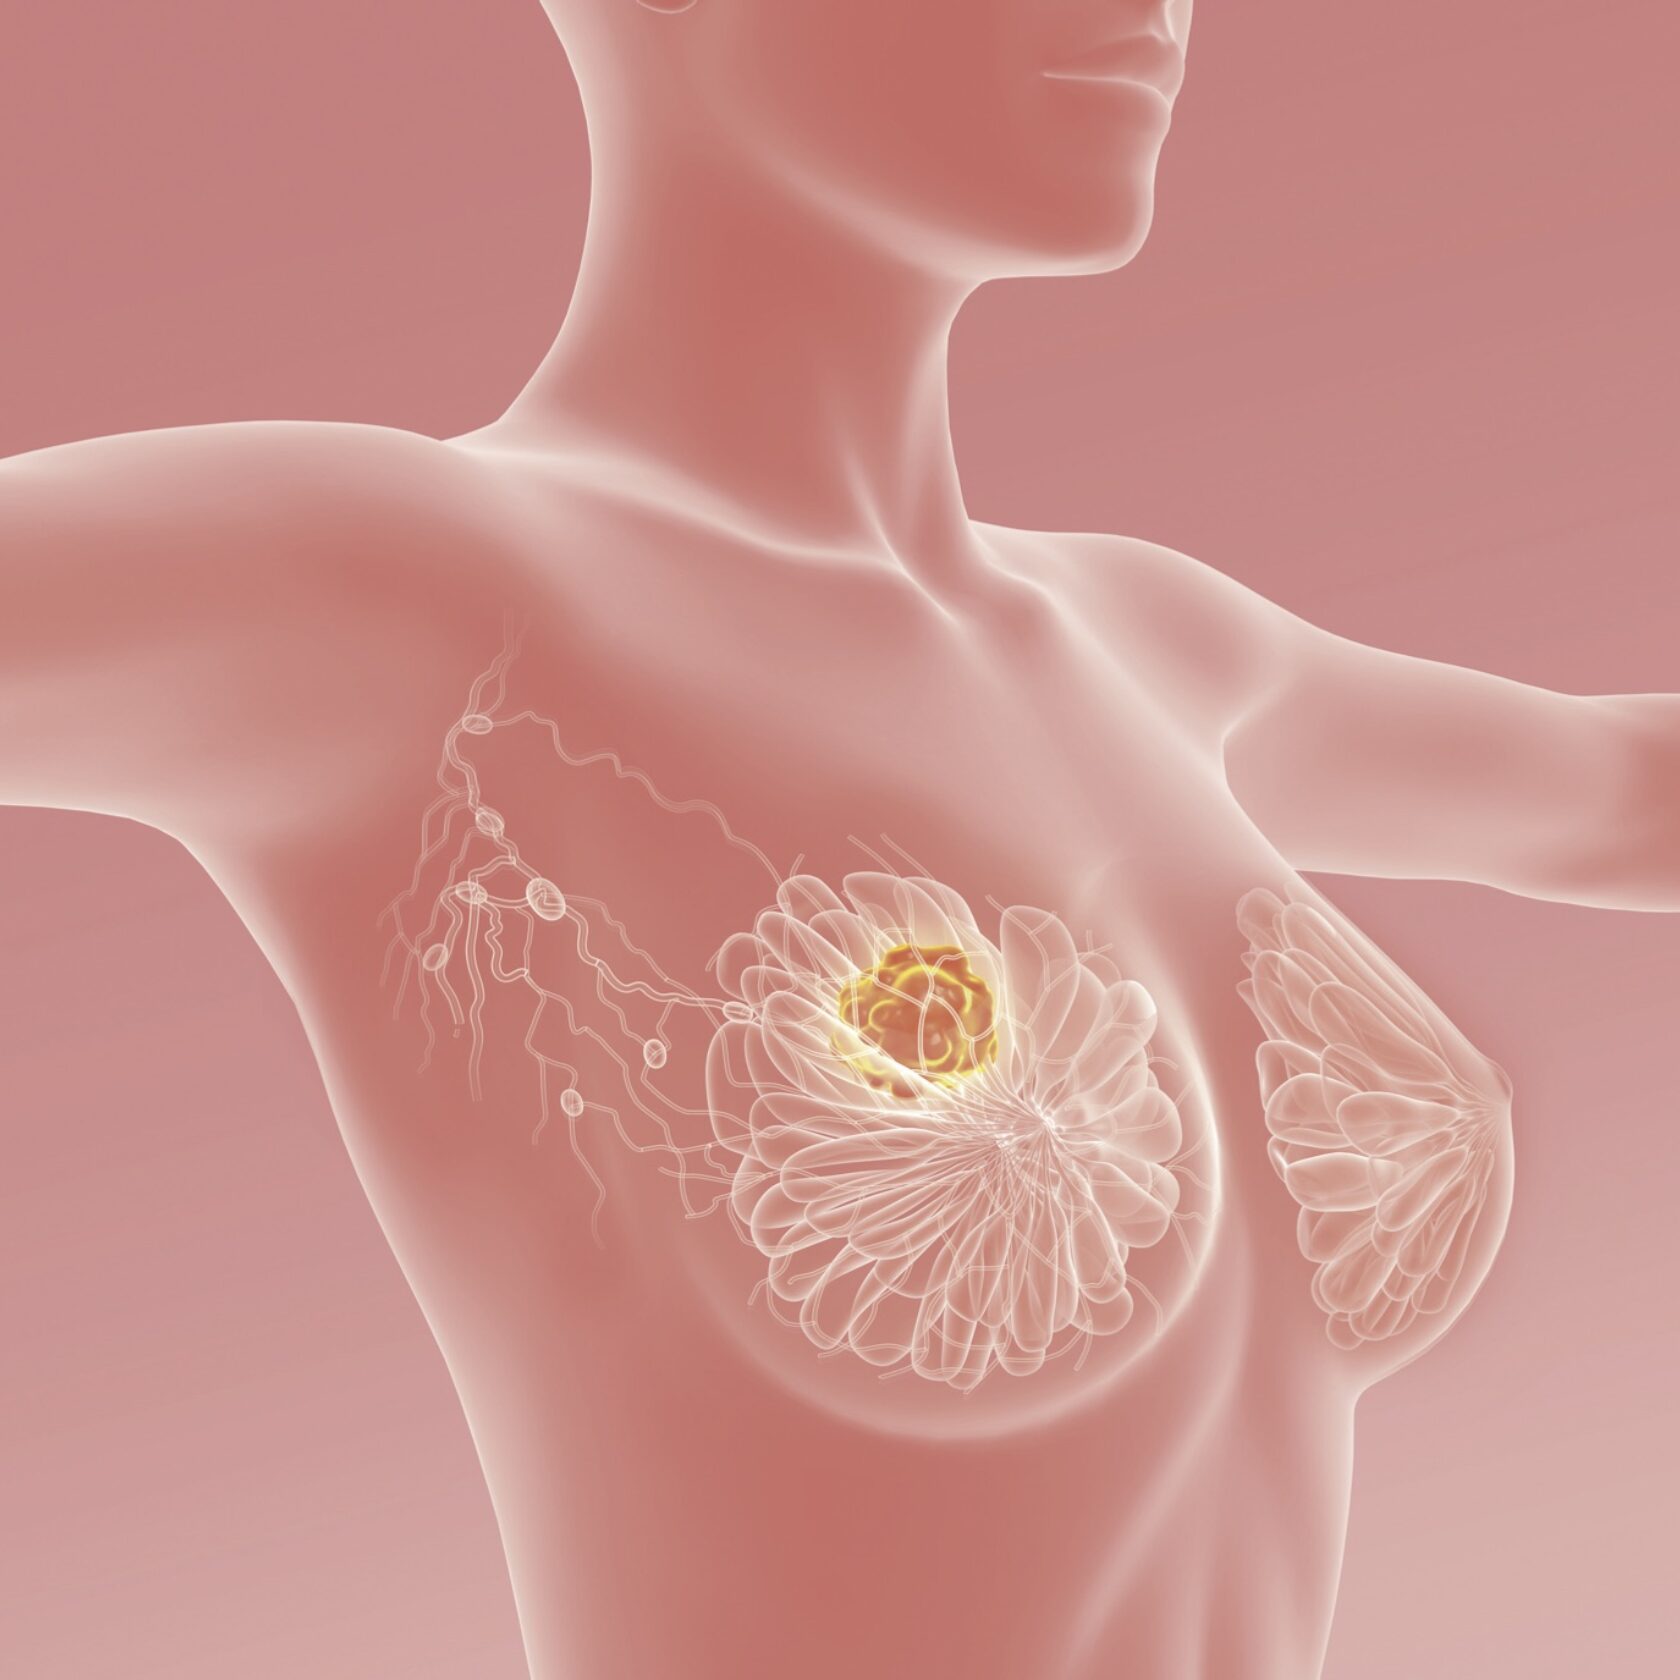 KI-Darstellung eines Mammakarzinoms der weiblichen Brust.